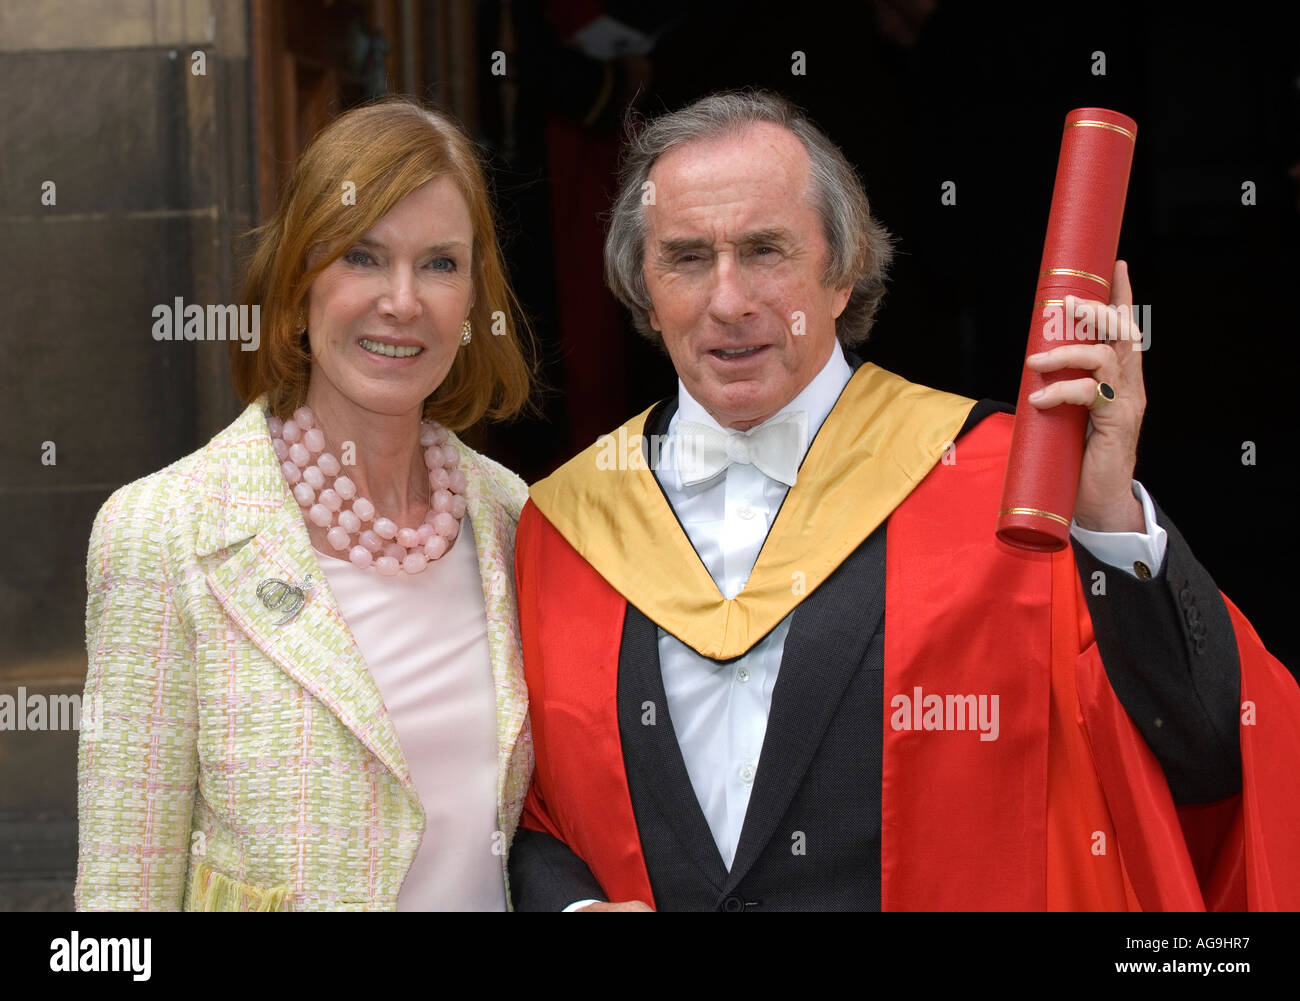 Ehemalige Formel 1-Rennfahrer Sir Jackie Stewart, mit seiner Frau erhält Ehrendoktorwürde von der University of Edinburgh Stockfoto